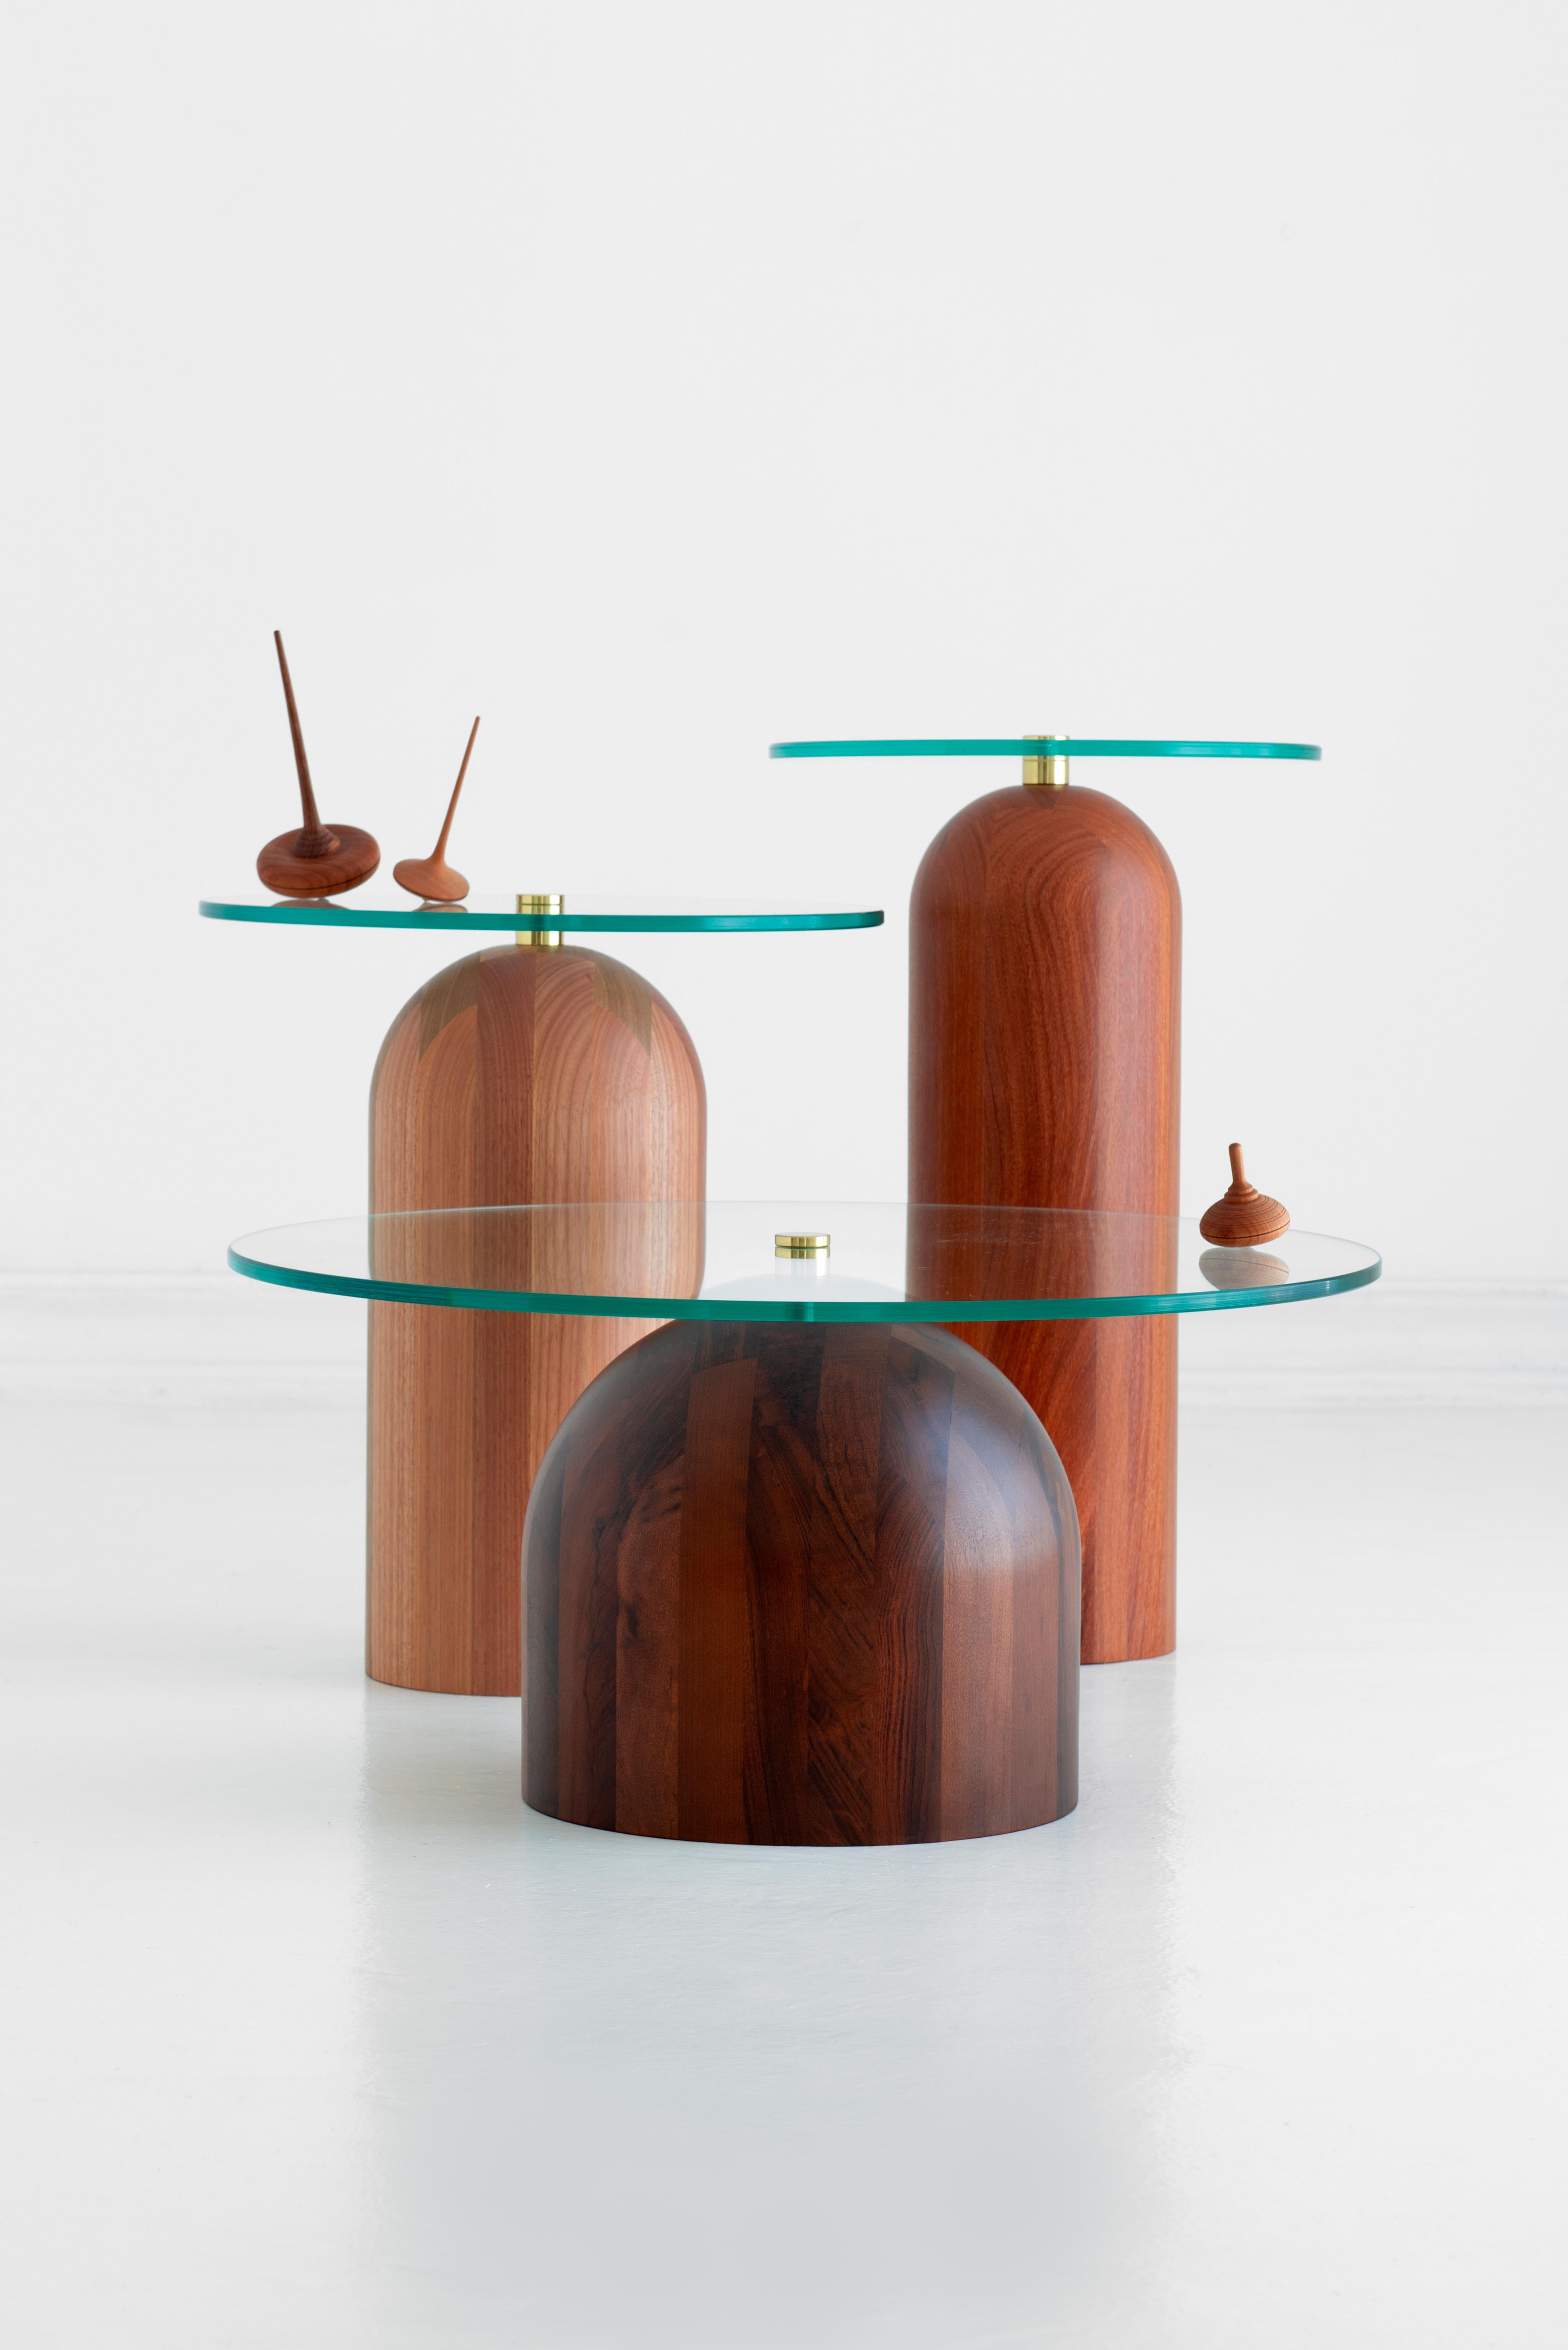 Trio of Side Tables, Leandro Garcia, Contemporary Brazil Design 1